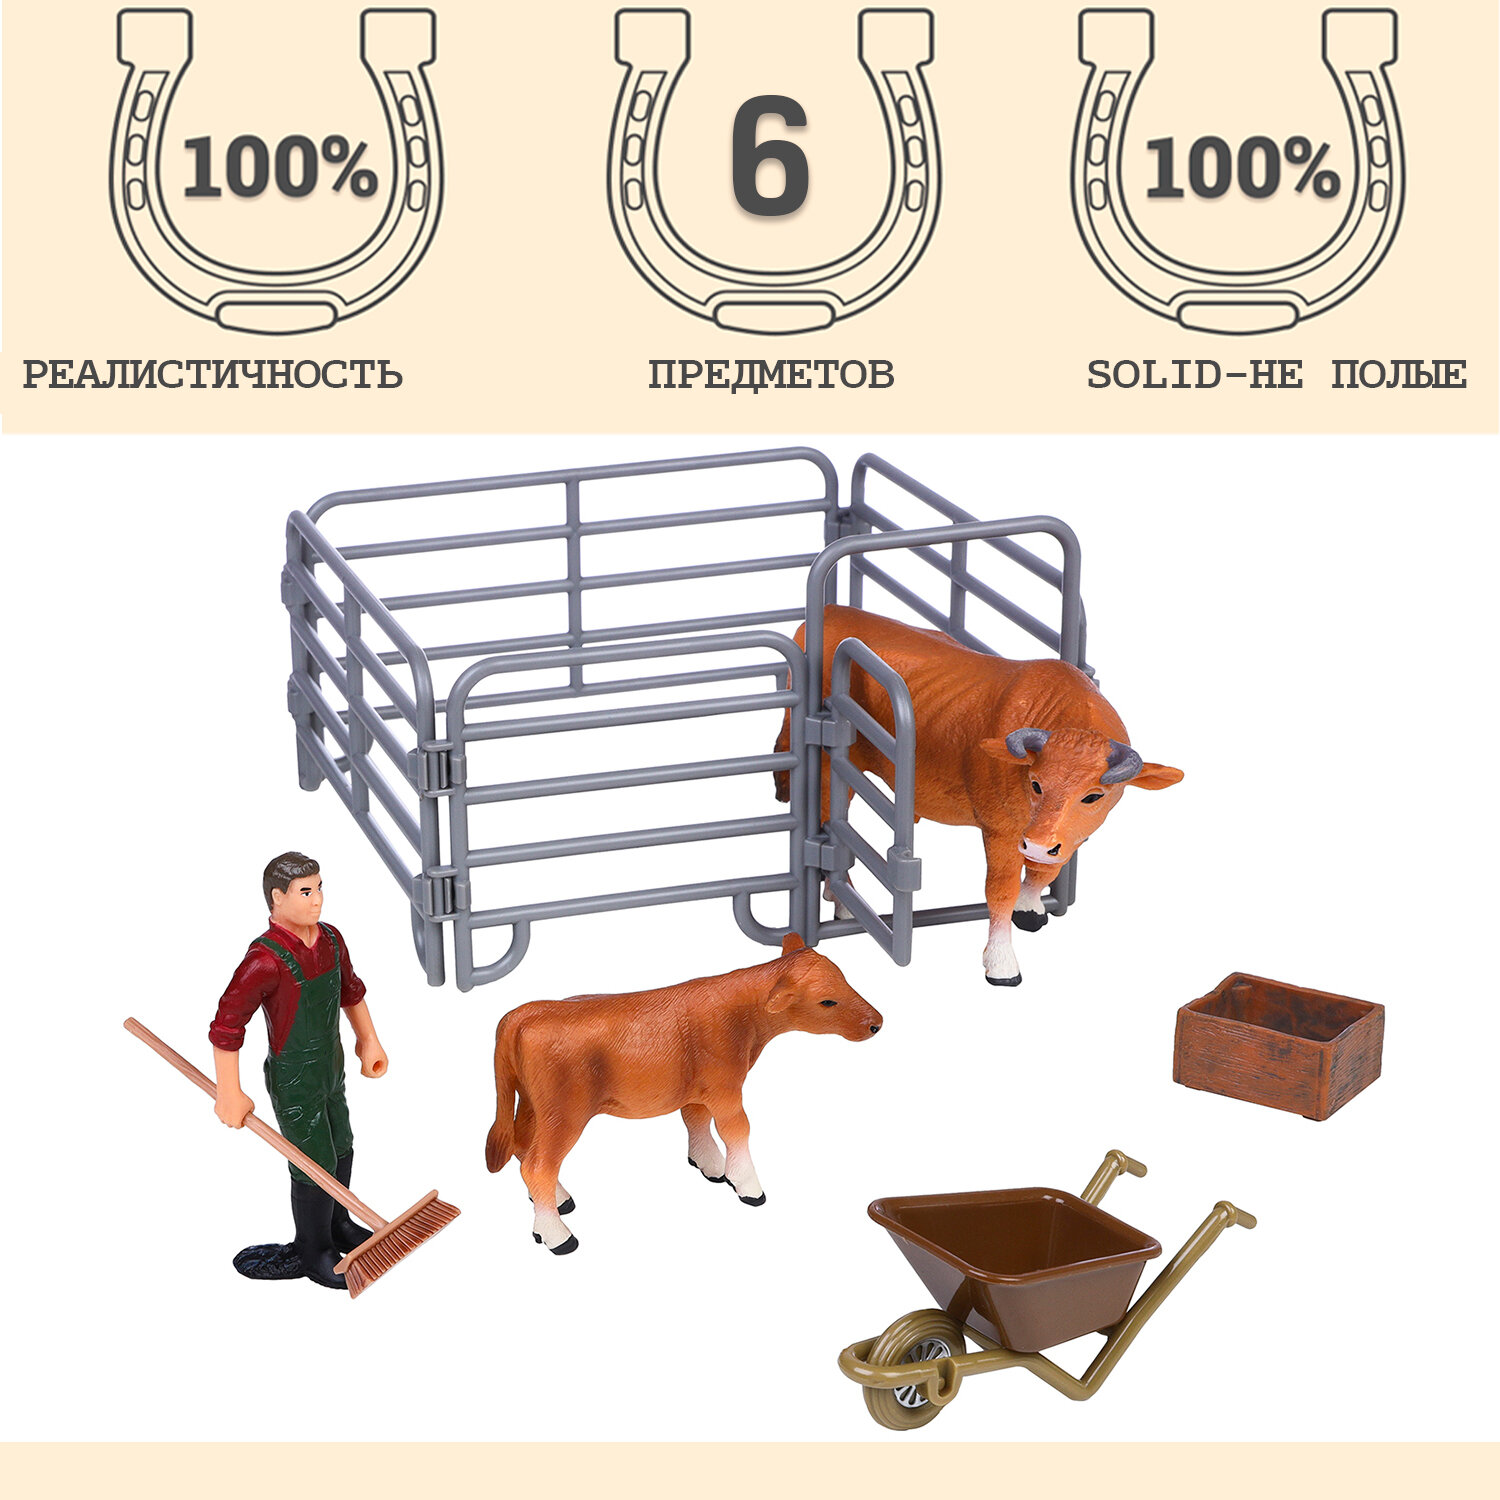 Игрушки фигурки в наборе серии "На ферме", 6 предметов (рыжий бык, теленок, фермер, ограждение-загон, аксессуары)